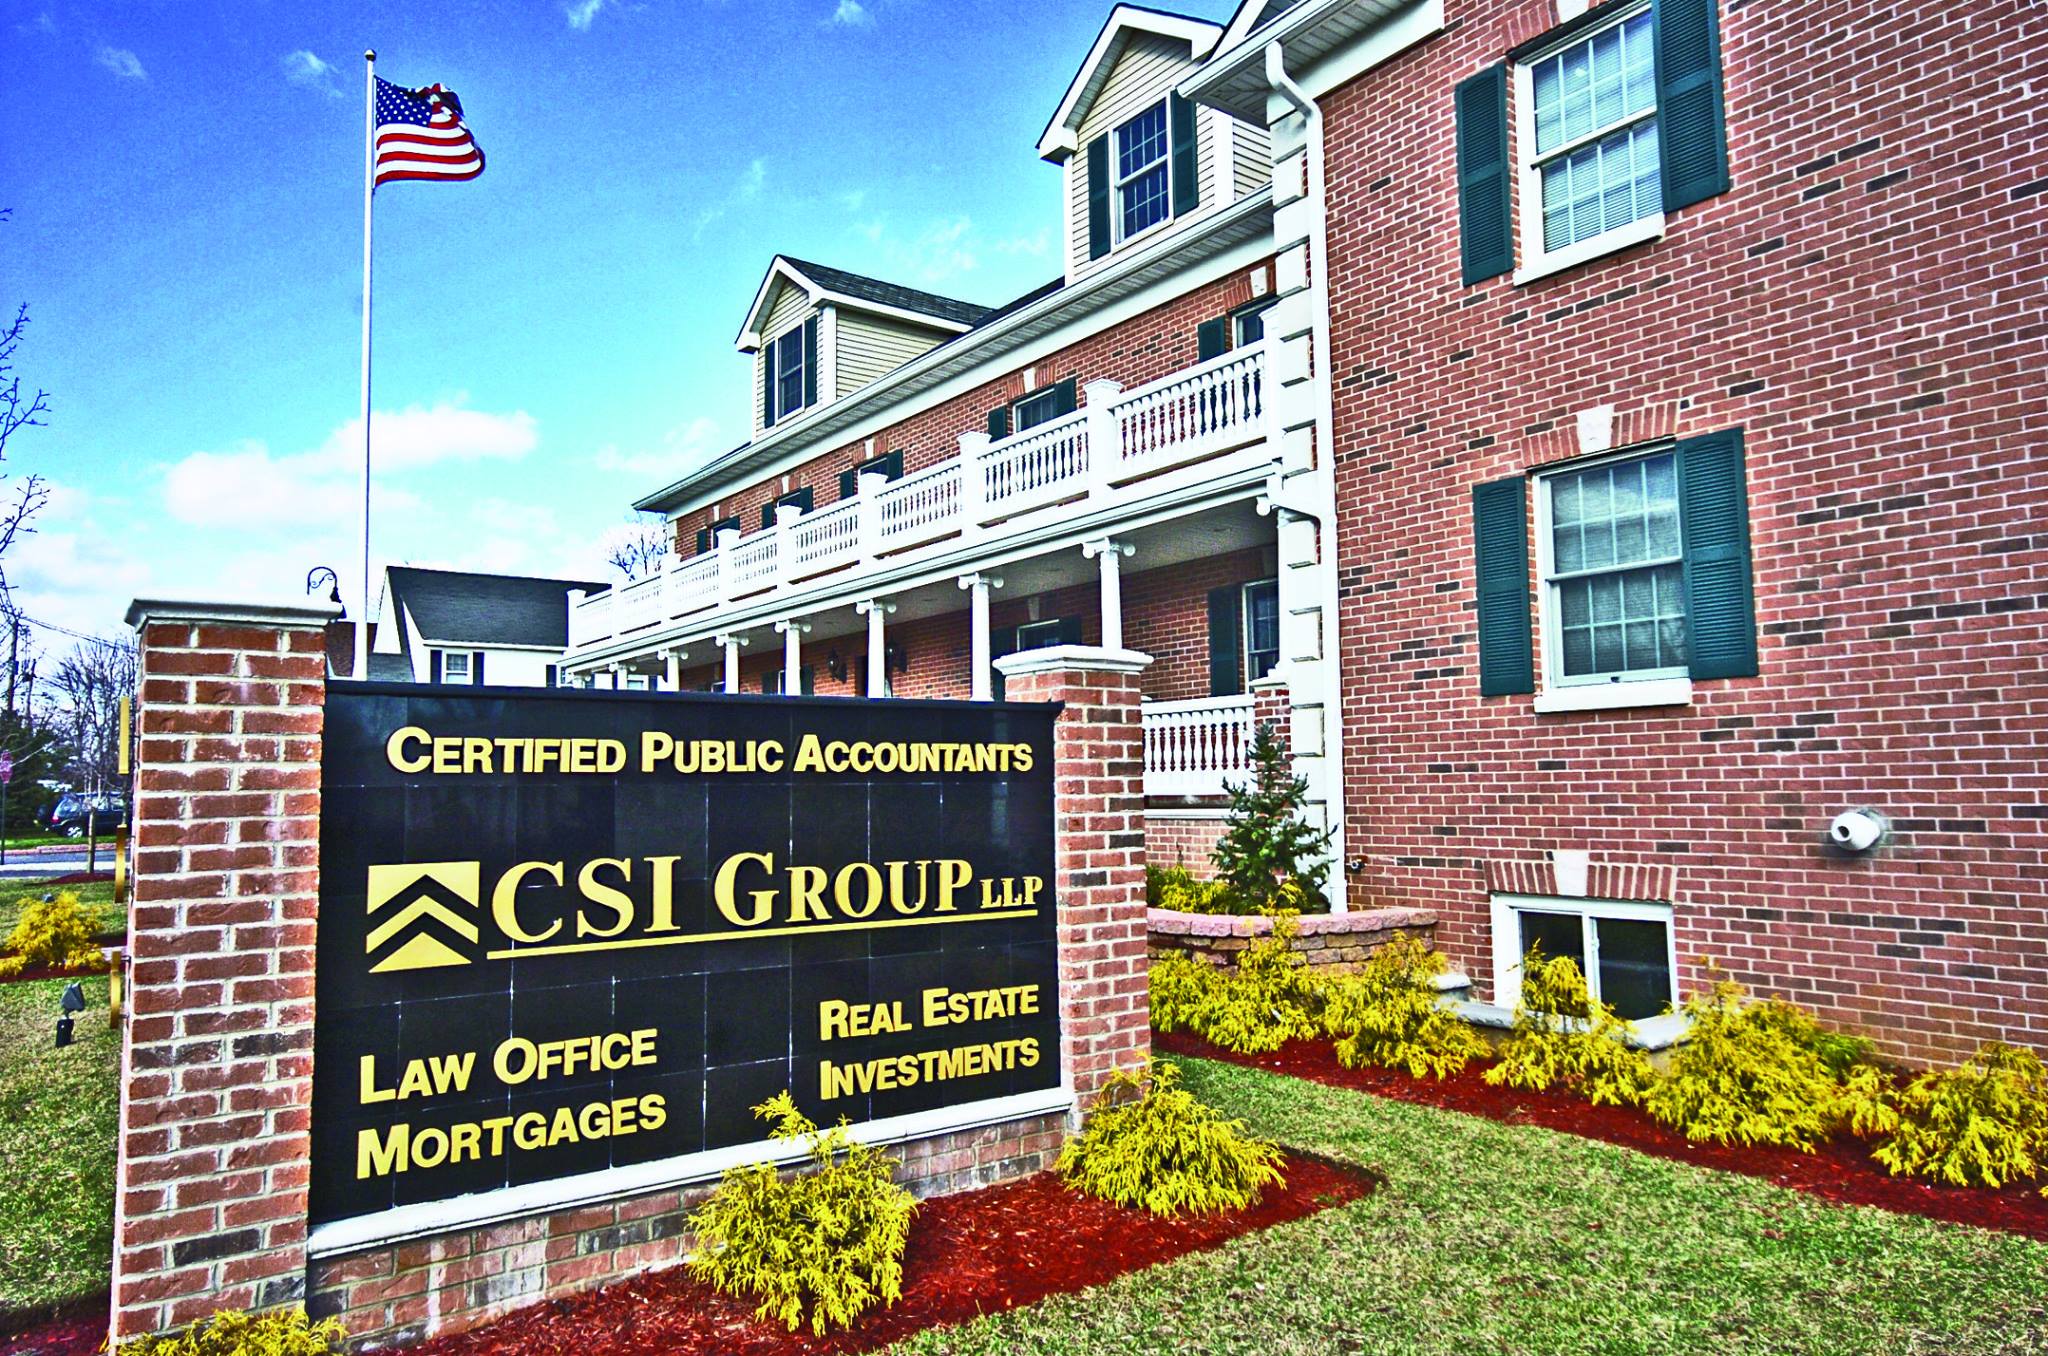 CSI GROUP, LLP. - CPAs 157 N Main St, Manahawkin New Jersey 08050